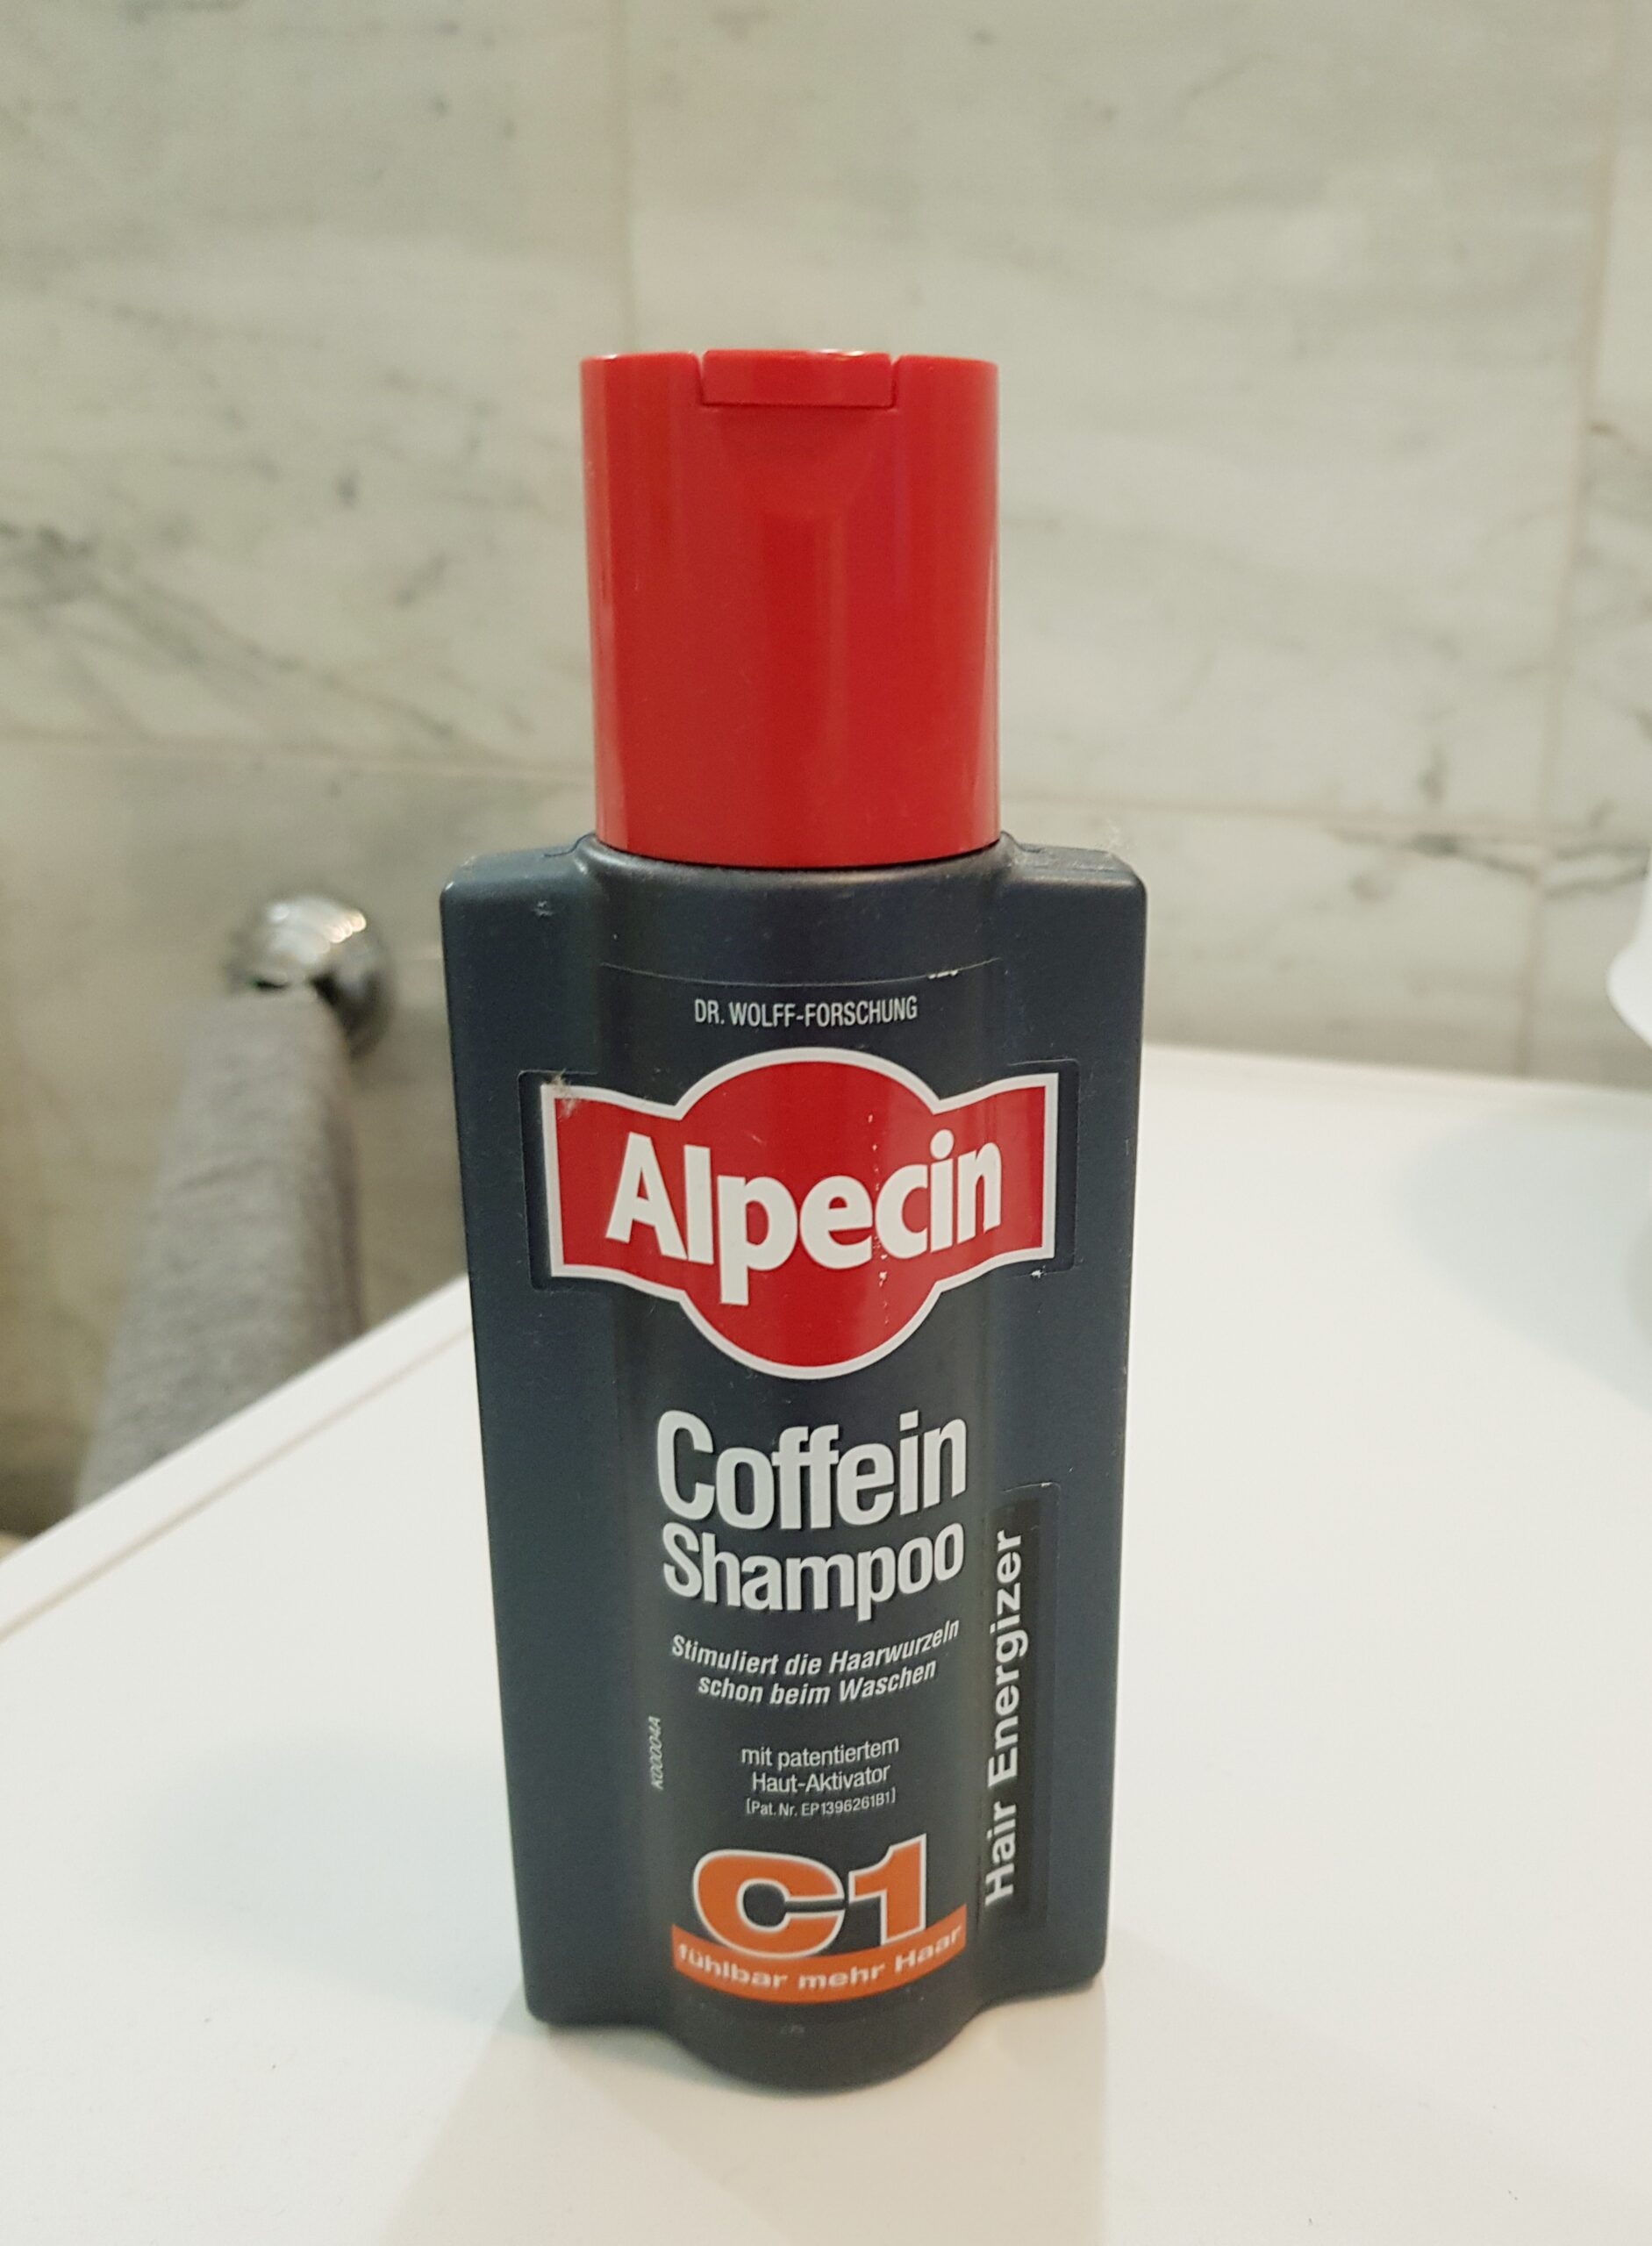 Alpecin coffein shampoo test - Nehmen Sie dem Sieger unserer Experten